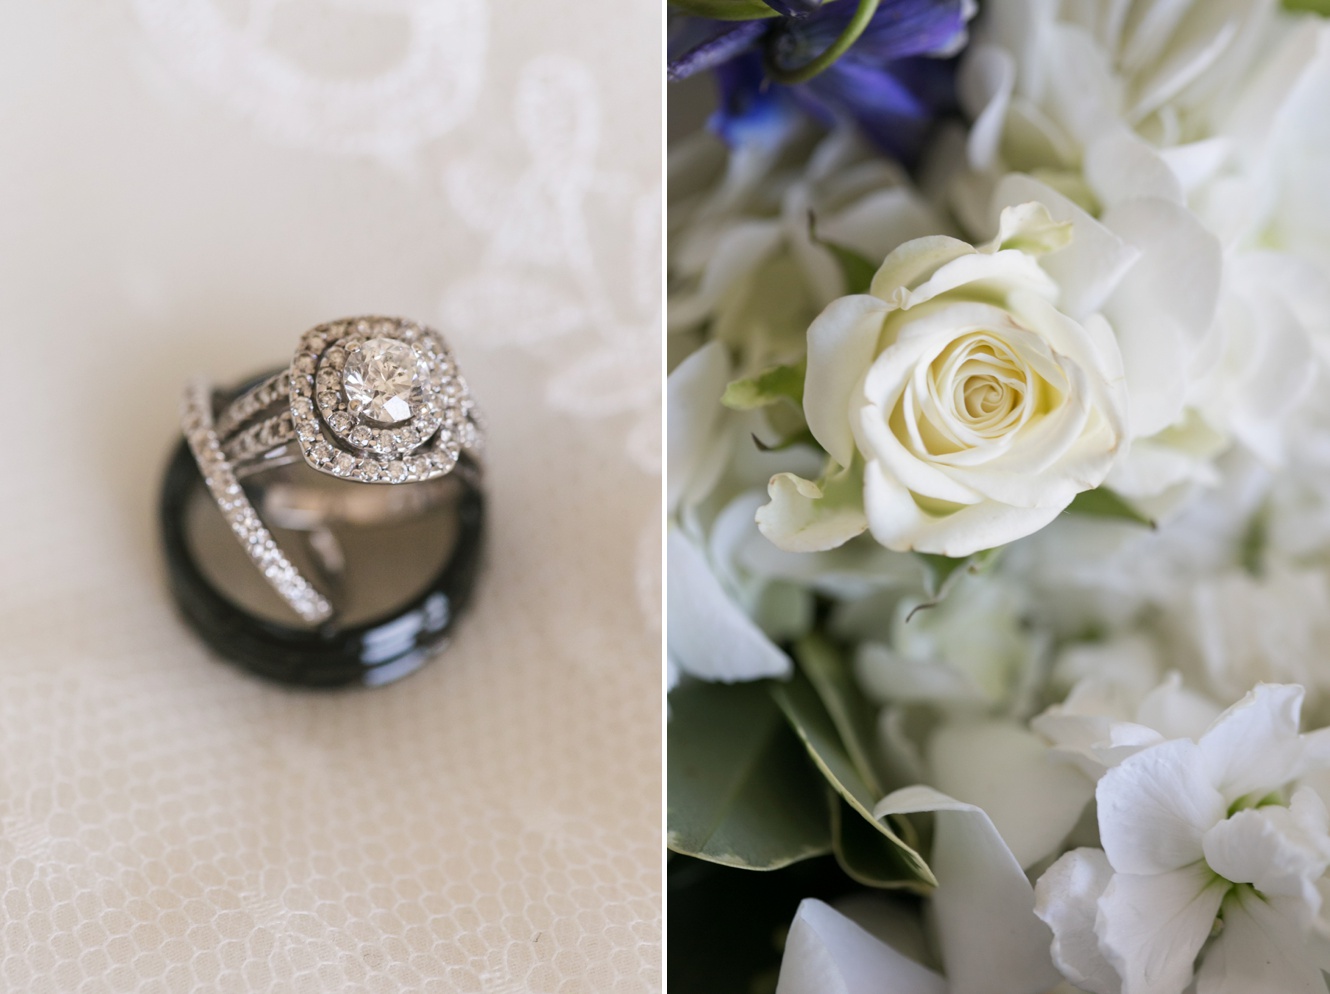 halo diamond wedding engagement ring with fresh flowers photo